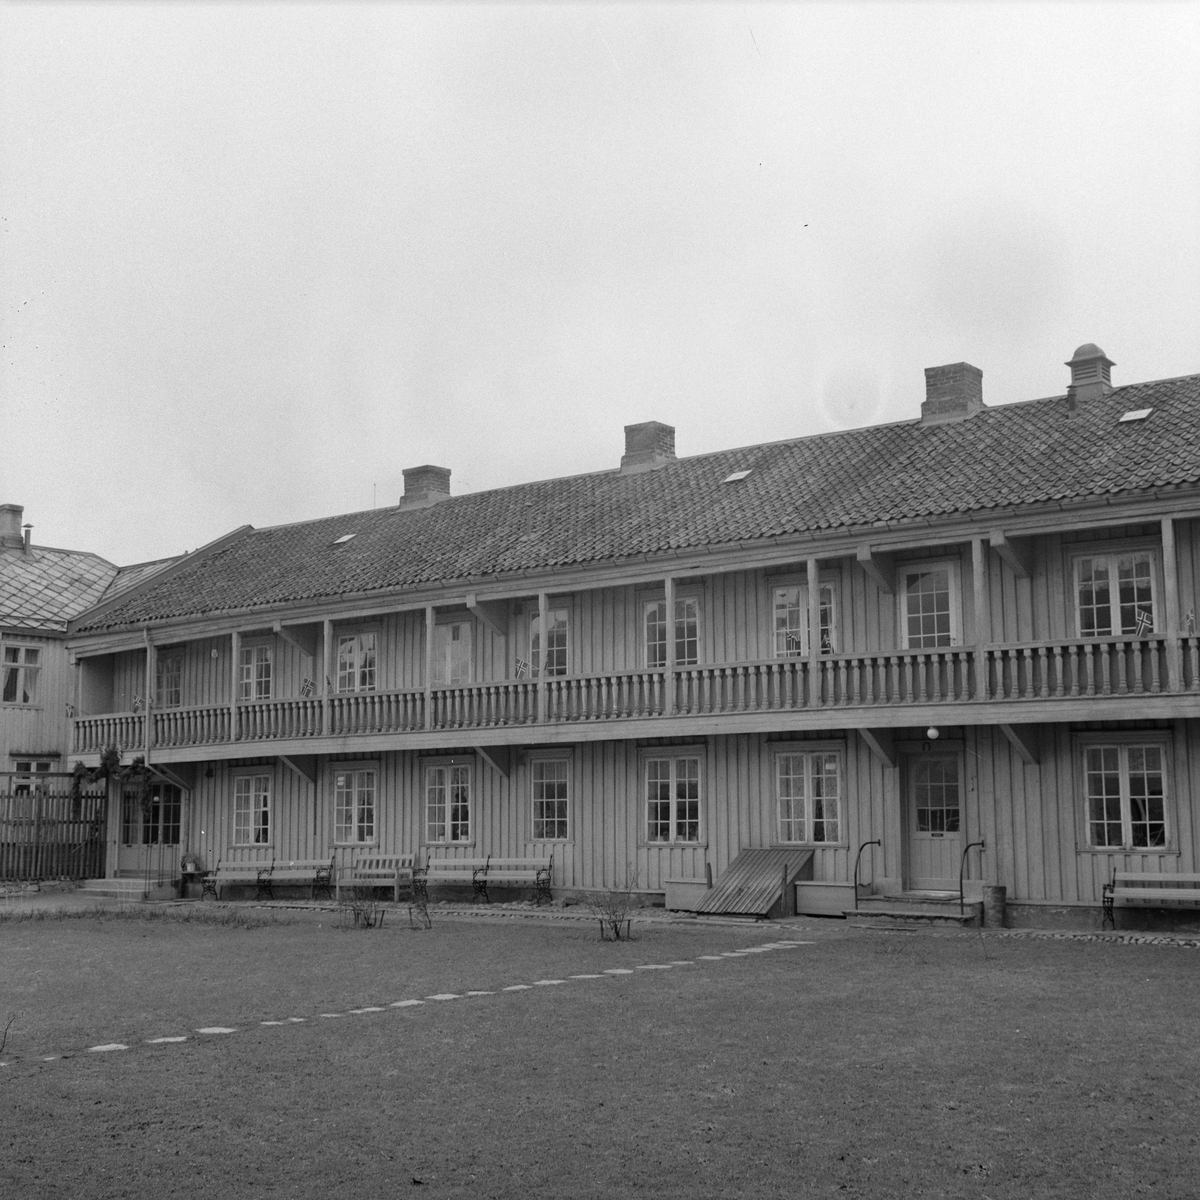 St. Jørgens Hus feirer 350-årsjubileum